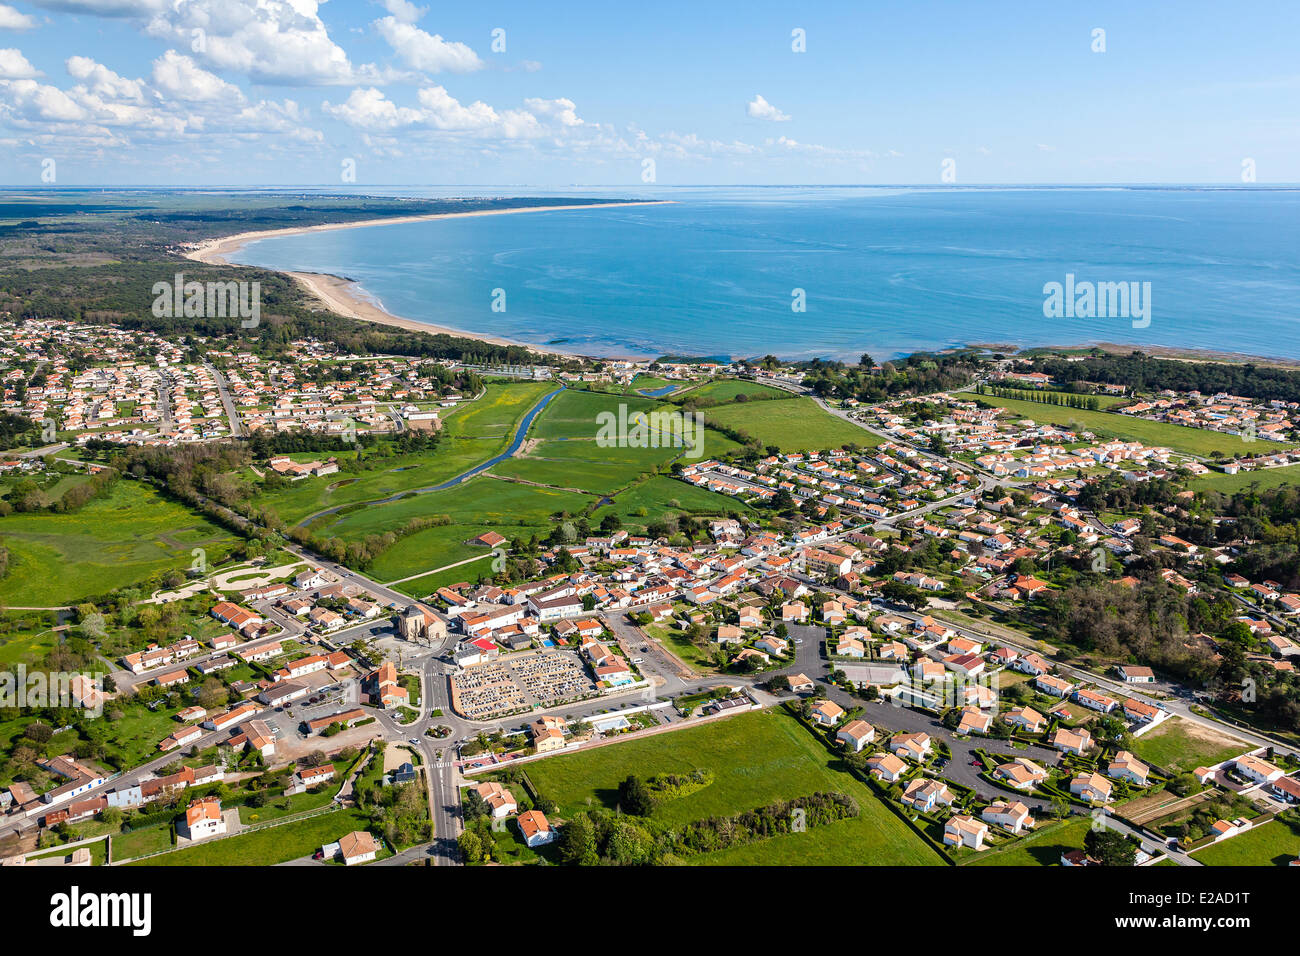 France, Vendee, Saint Vincent sur Jard (aerial view) Stock Photo